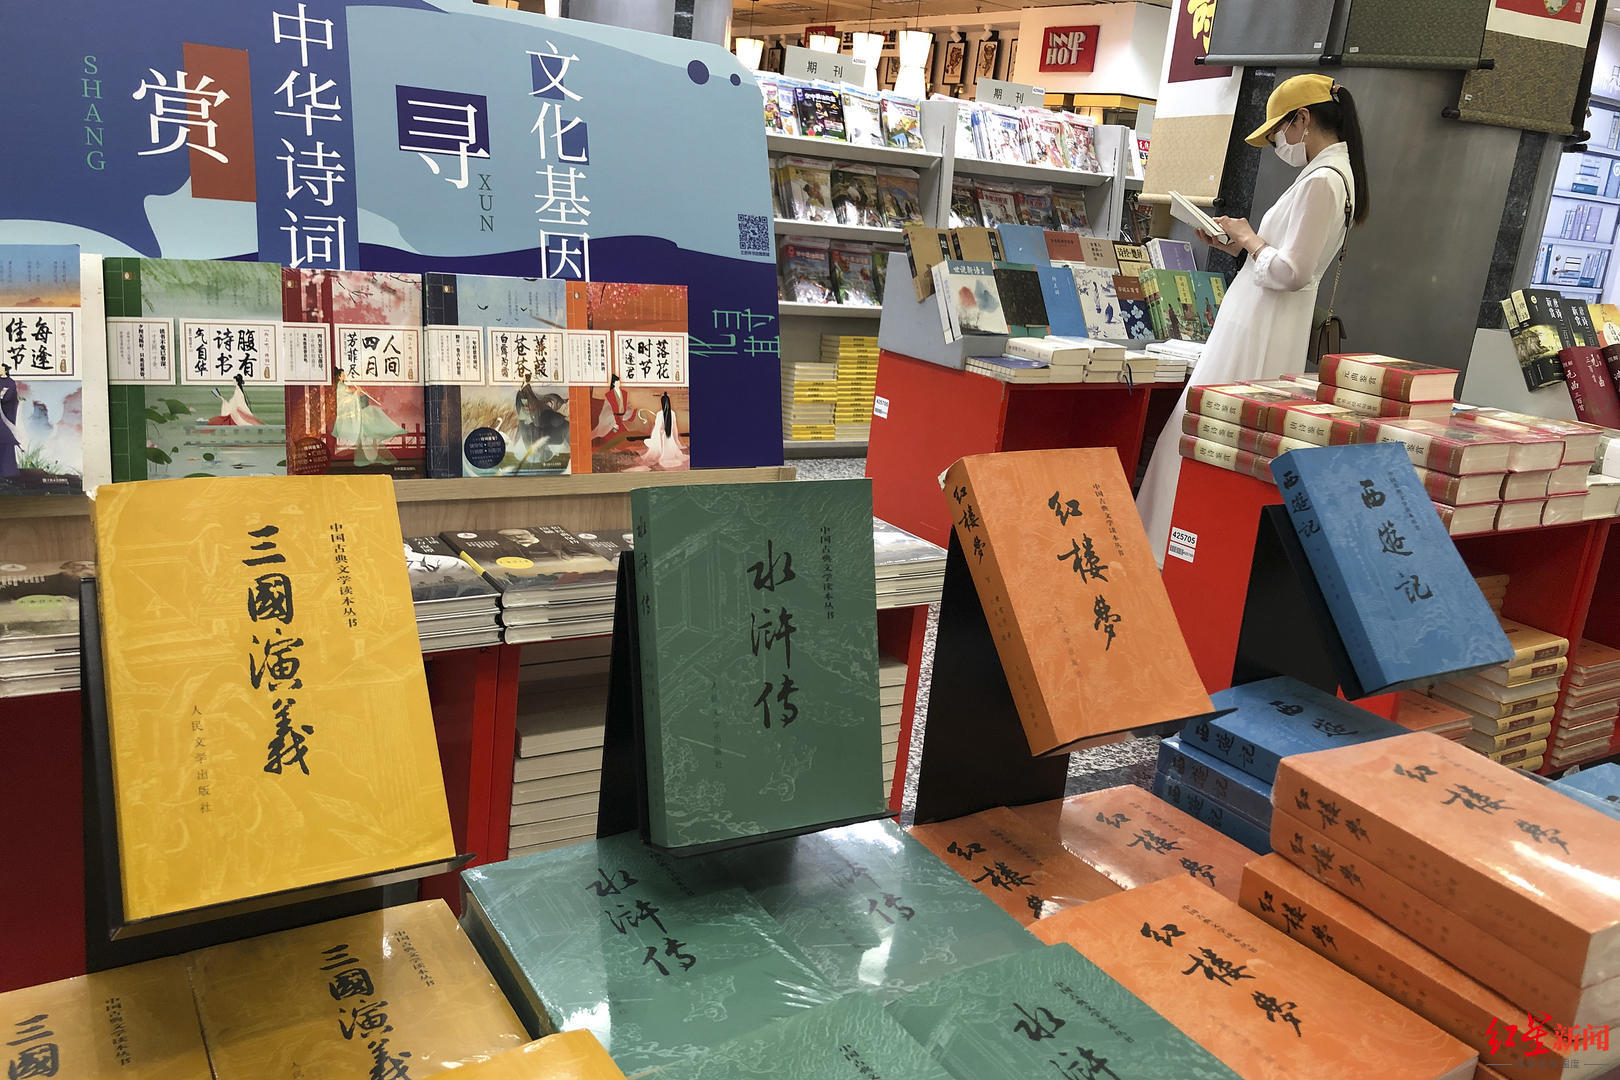 ↑书店里《水浒传》等名著展示区。图据视觉中国